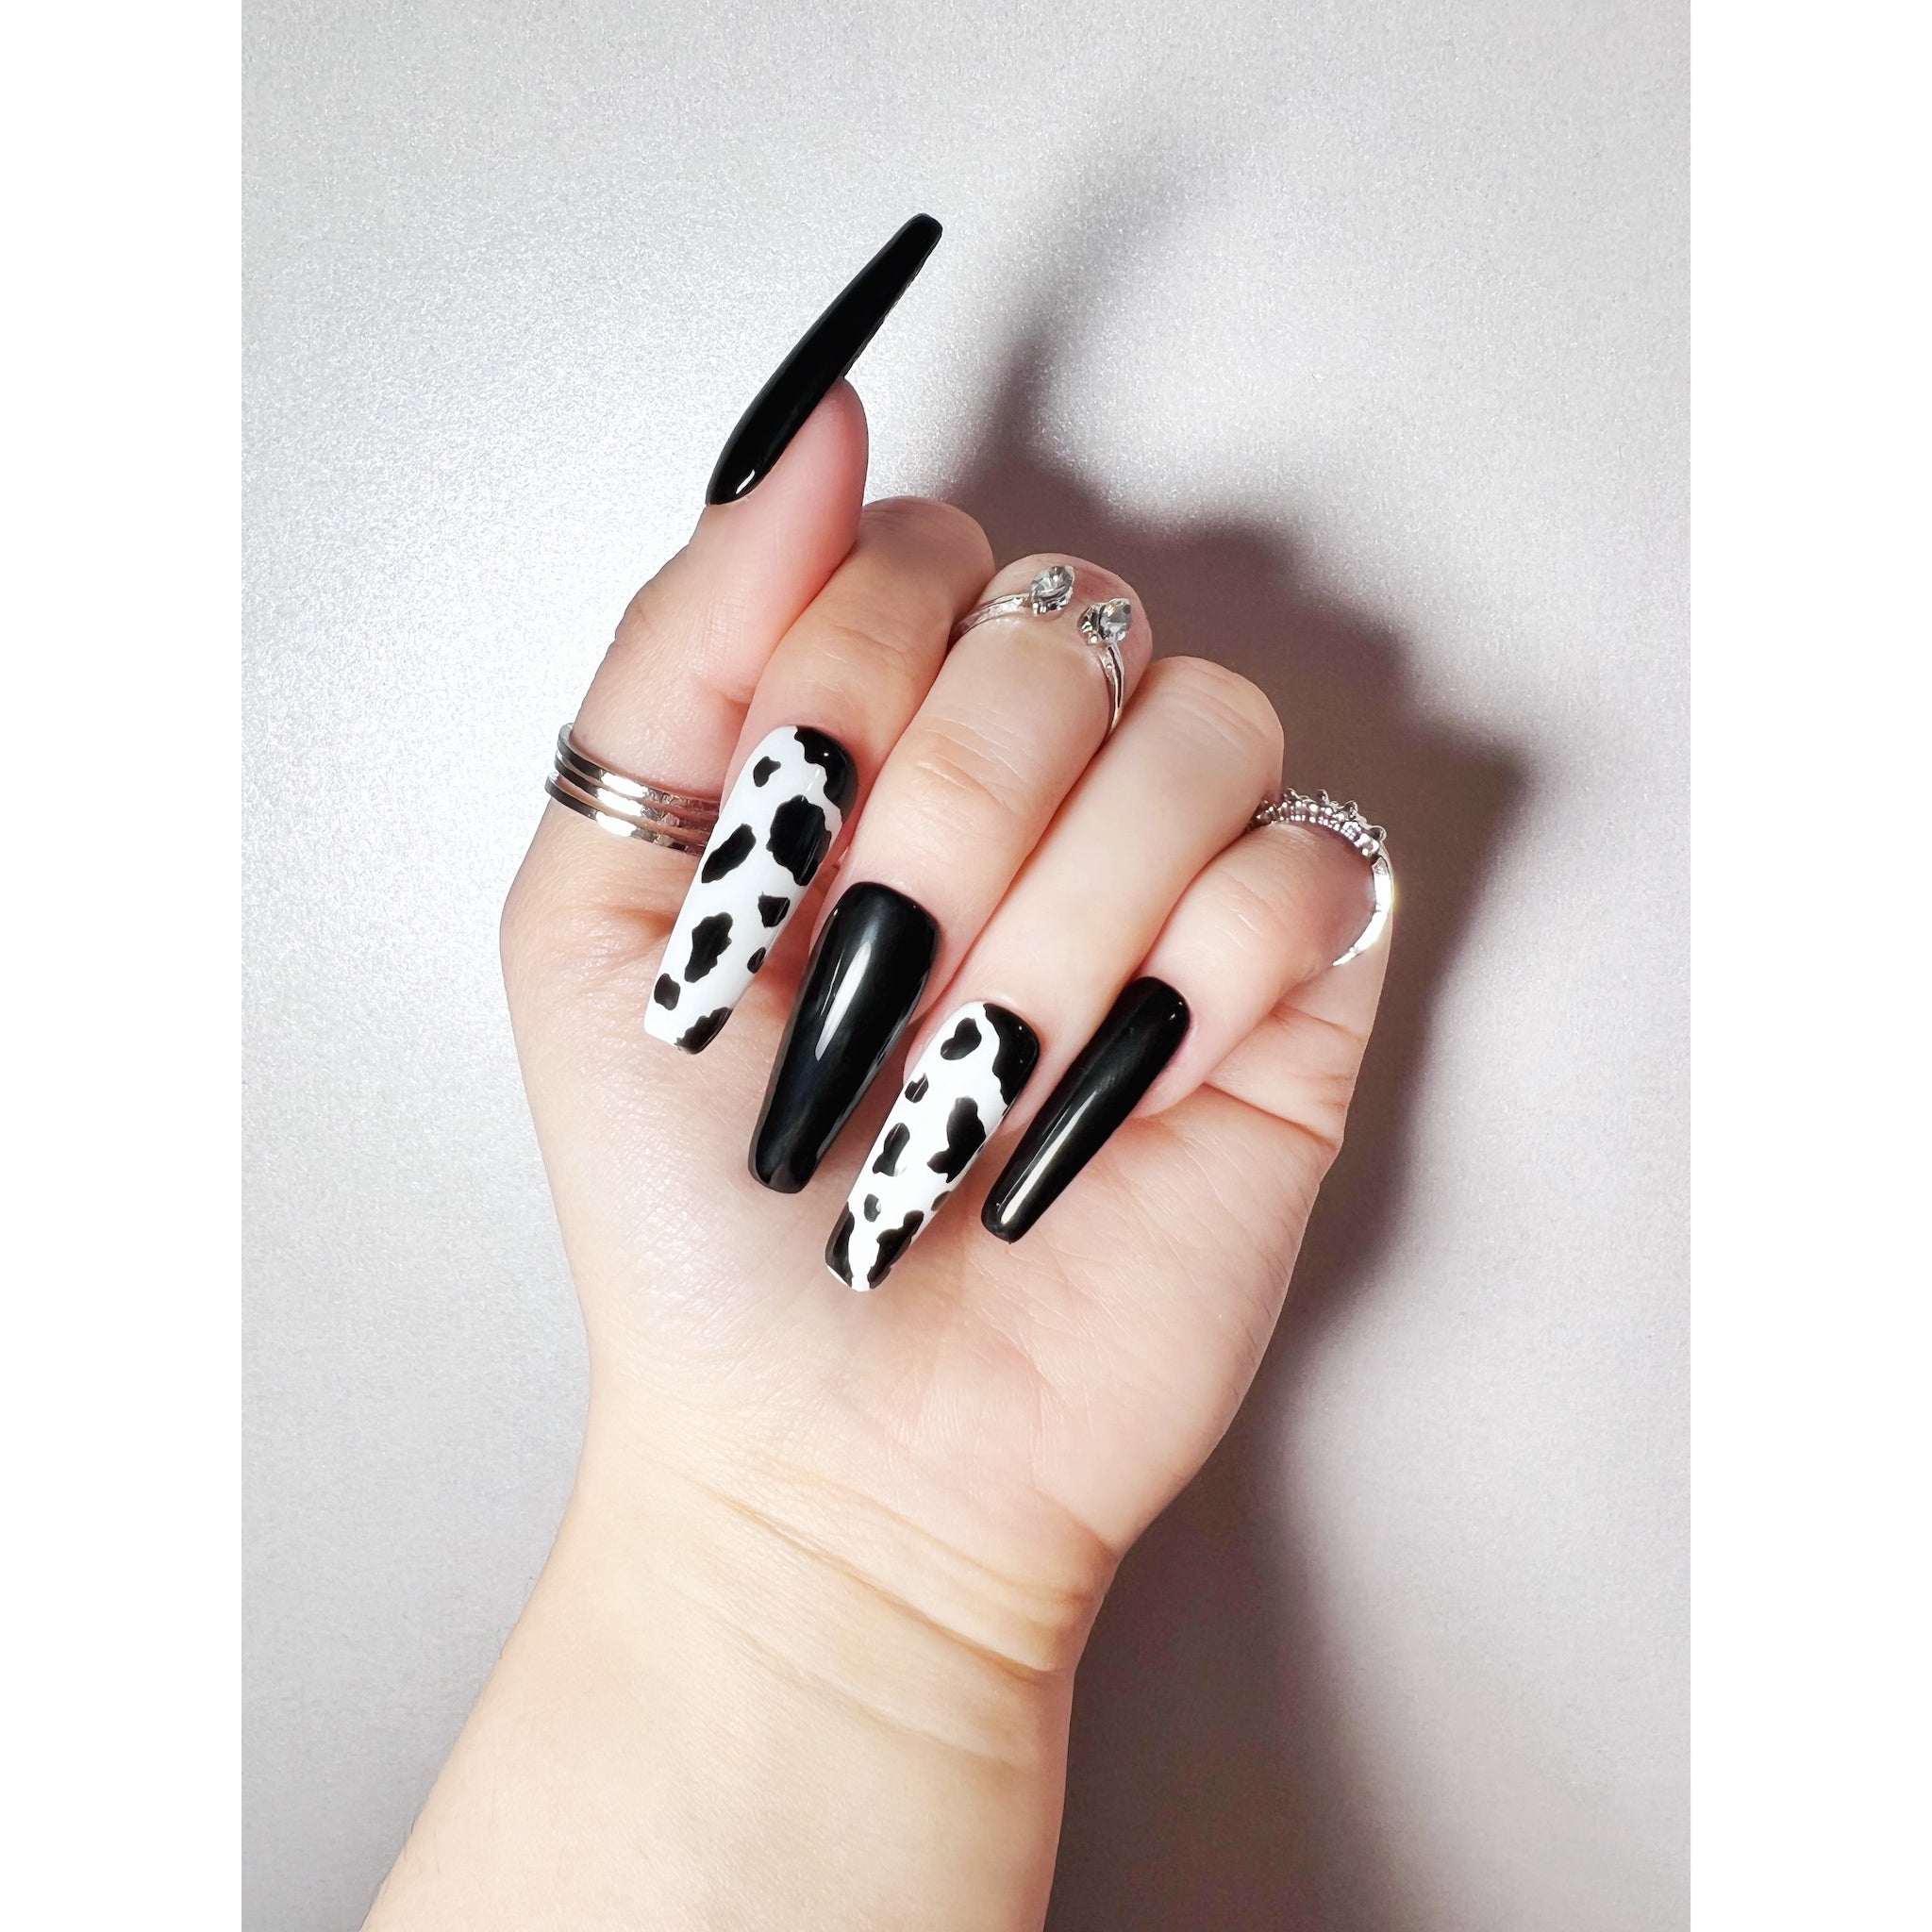 Blue cow nails | Cow nails, Nails, Short acrylic nails designs